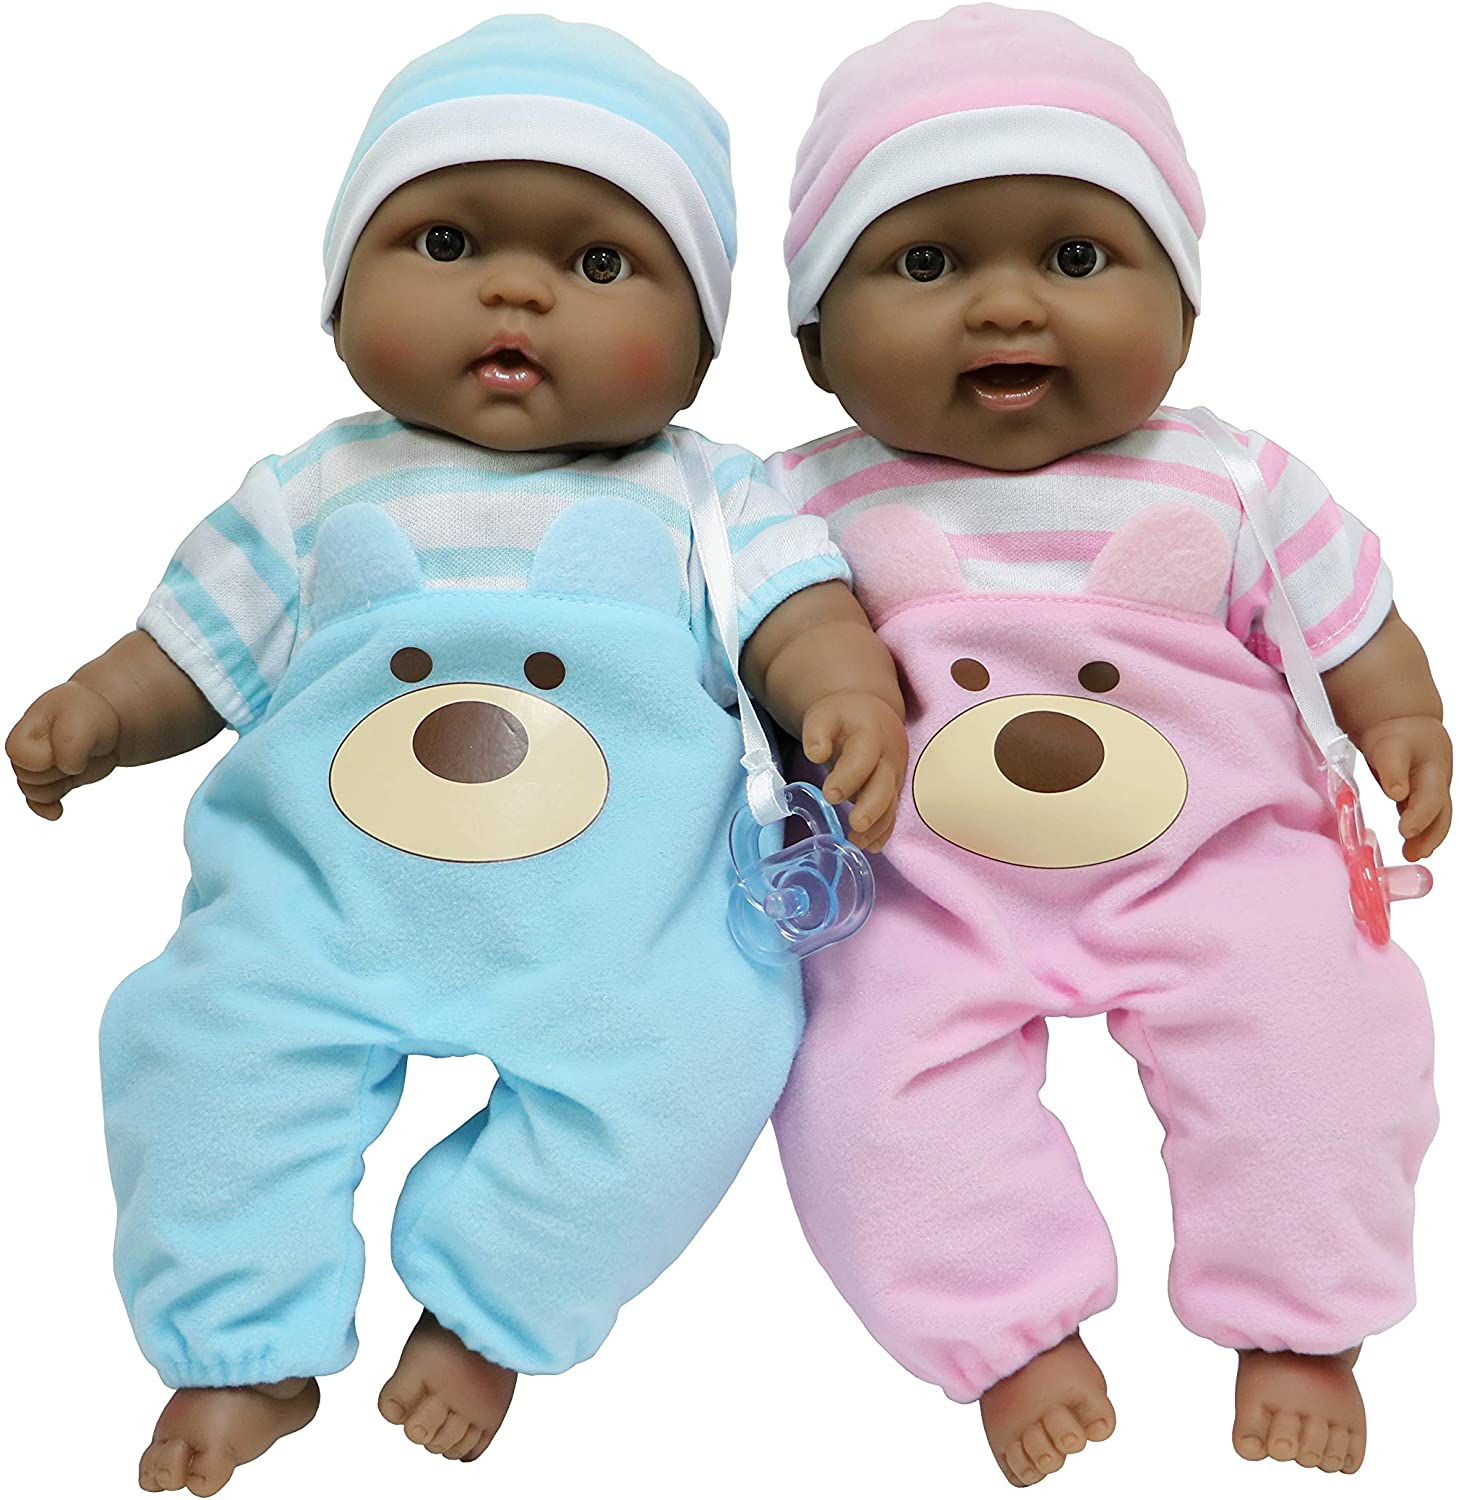 JC Toys Twin 13-Inch Realistic Soft Body Baby Dolls